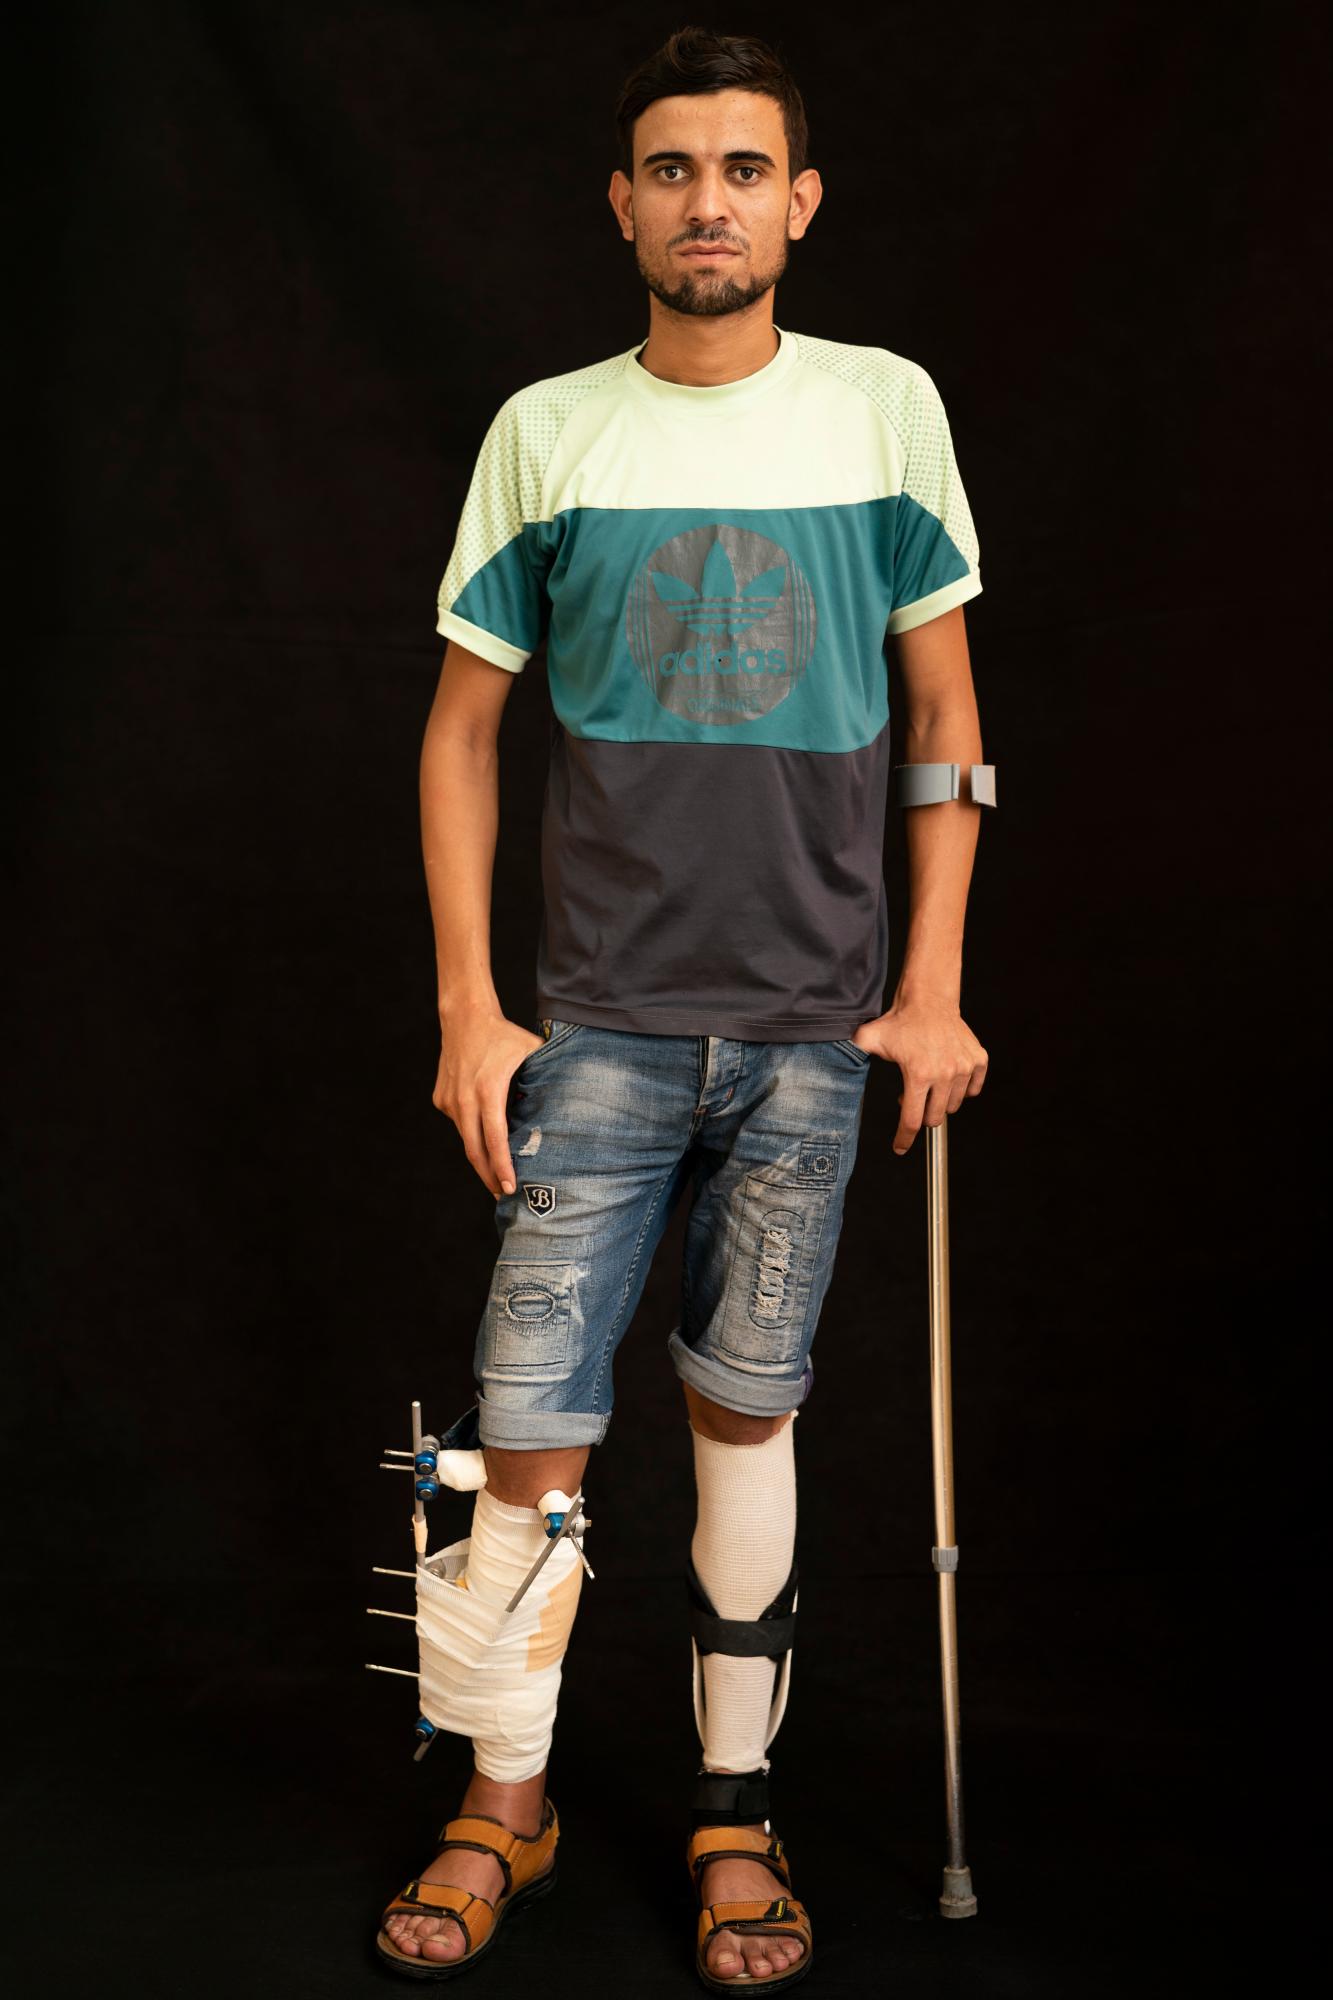 Mohammed al-Eissawi, de 24 años, dice que estaba lanzando piedras con un tirachinas cuando le dispararon en la pierna varias veces. Él ha estado protestando durante cinco años y ha sido herido muchas veces. Dice que no tiene miedo y seguirá participando en las protestas.